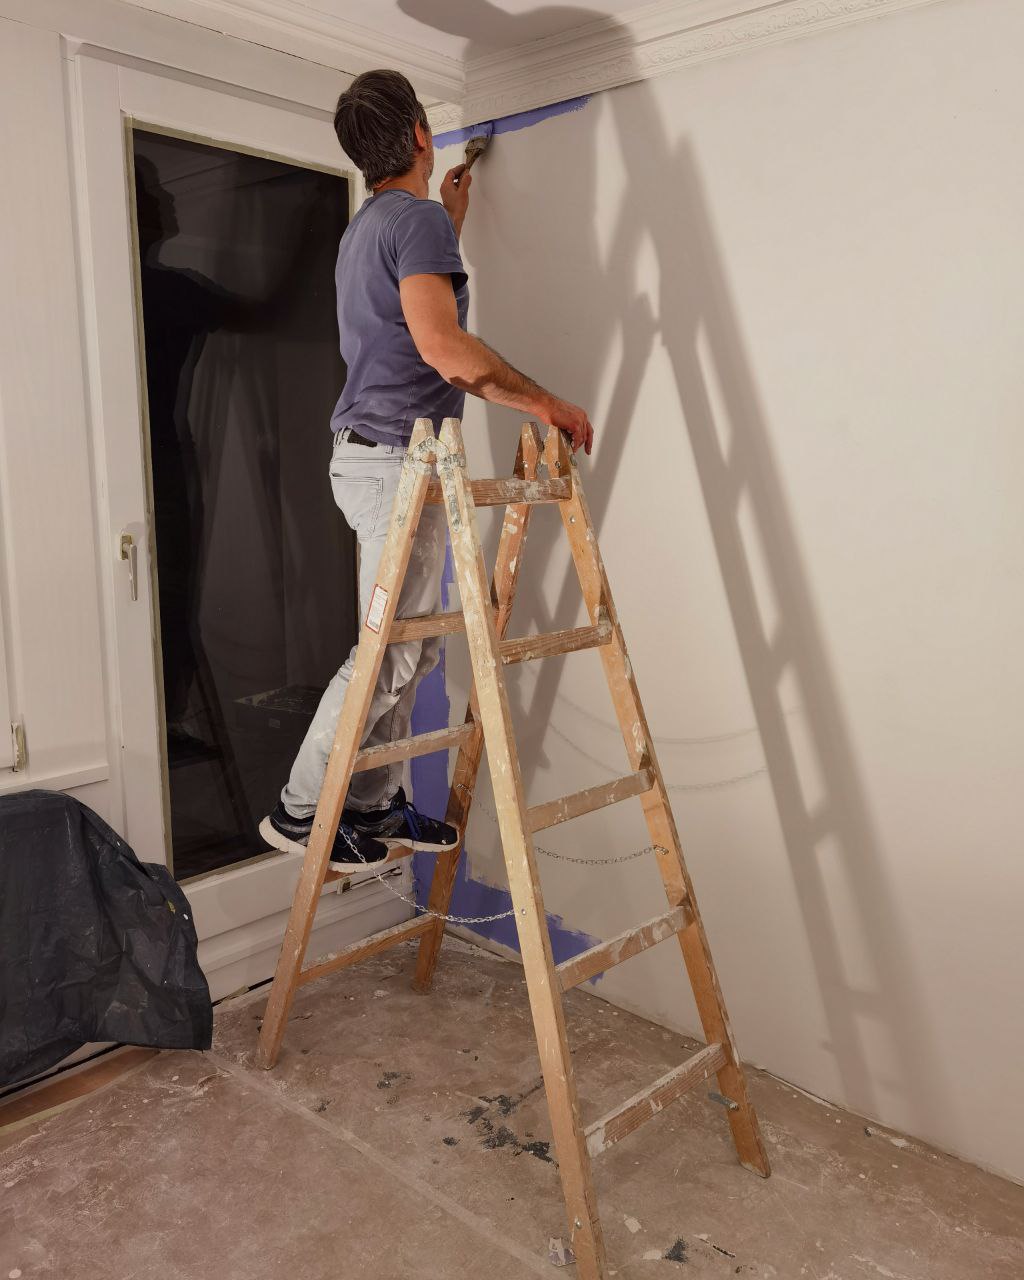 Mann steht auf einer Leiter und streicht die Wände blau